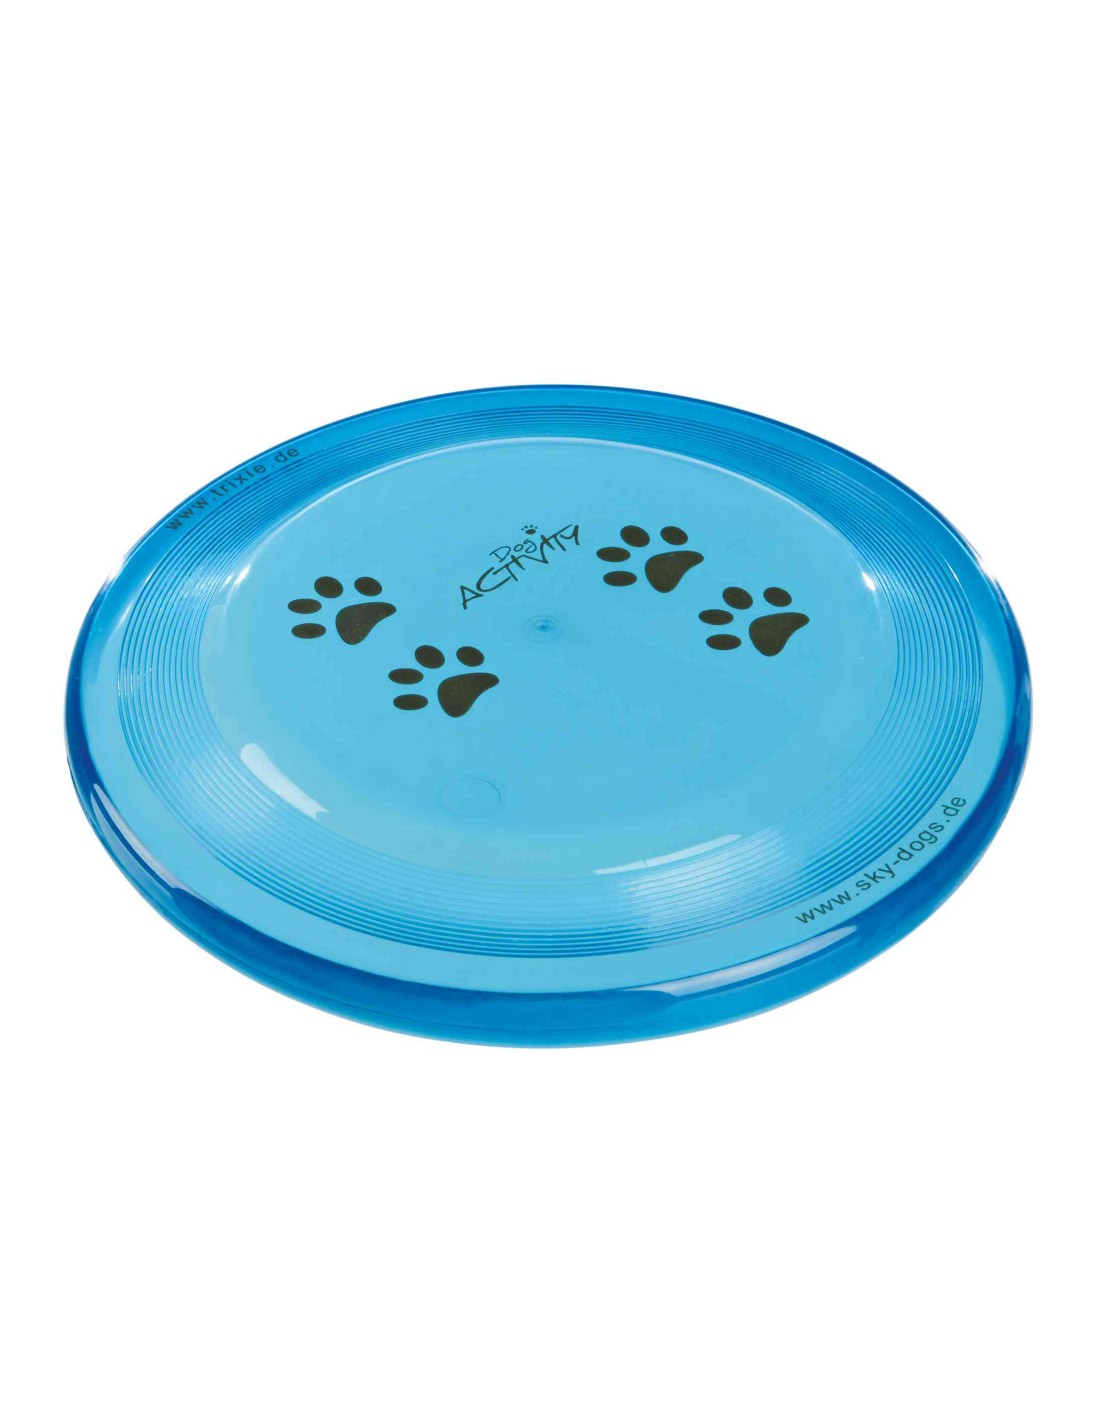 Juguetes para perros Frisbee homologado para competiciones